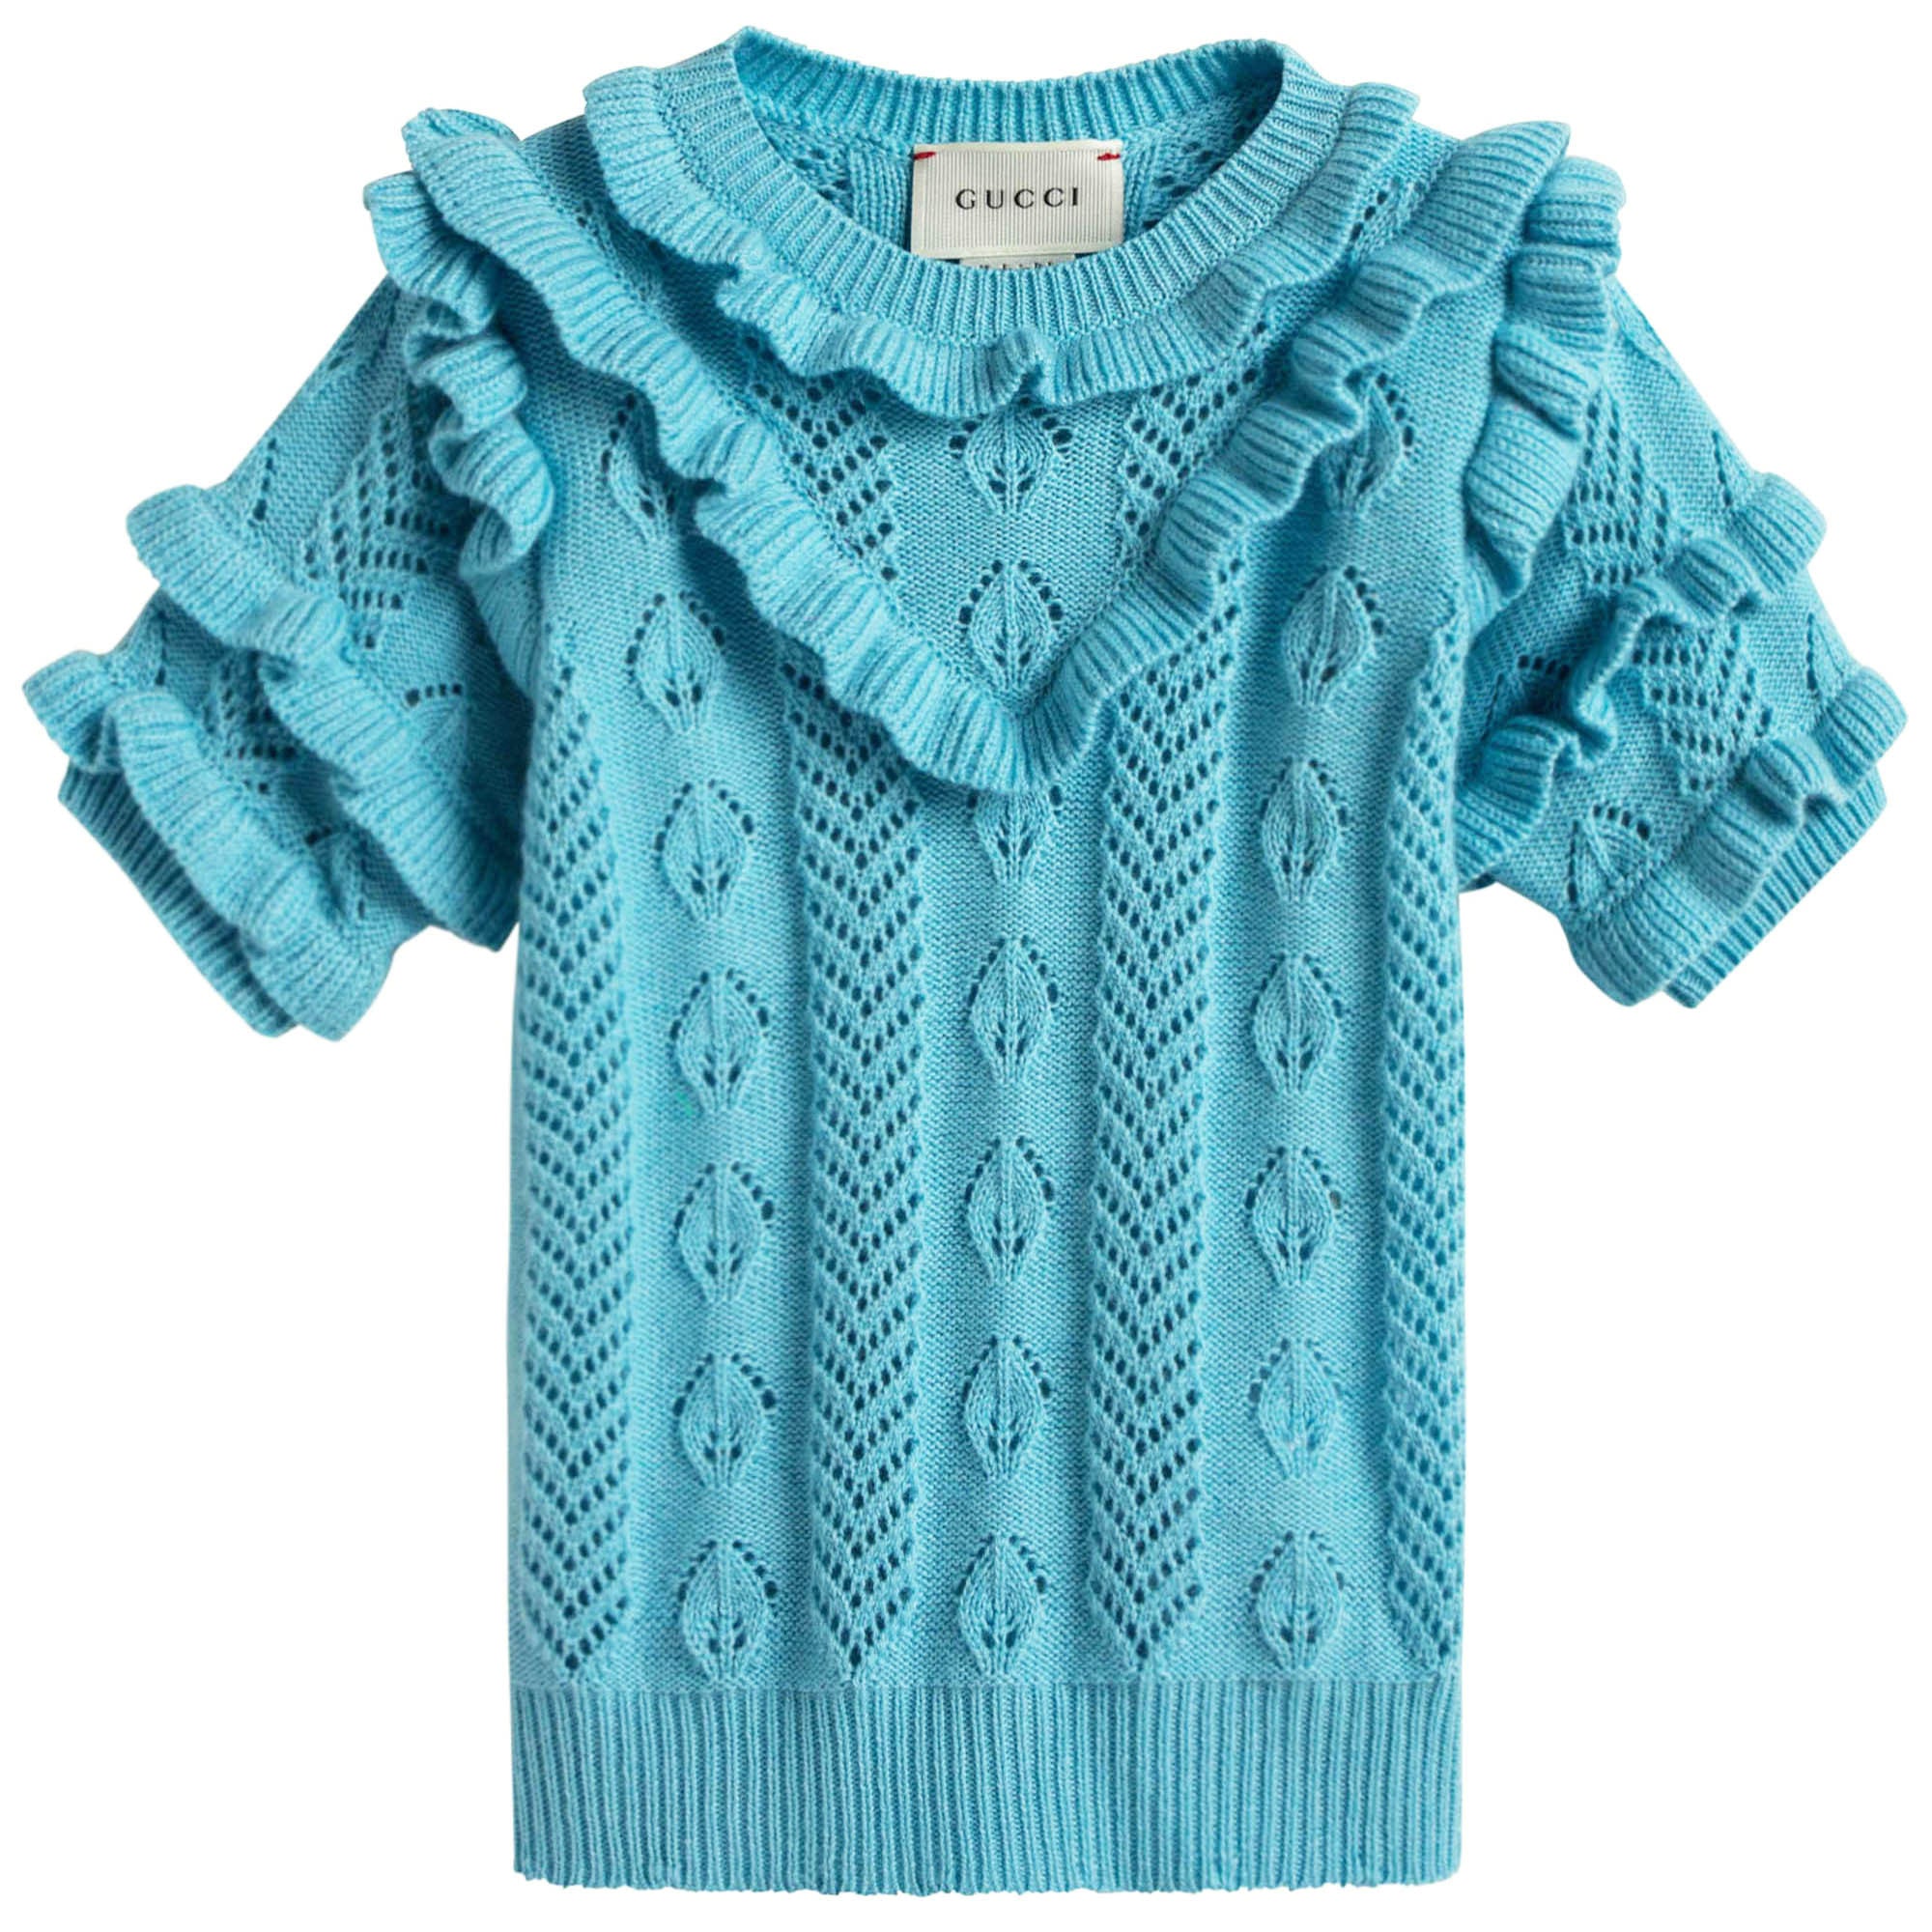 Girls Light Blue Knitted Hollow Short Sleeve Sweater